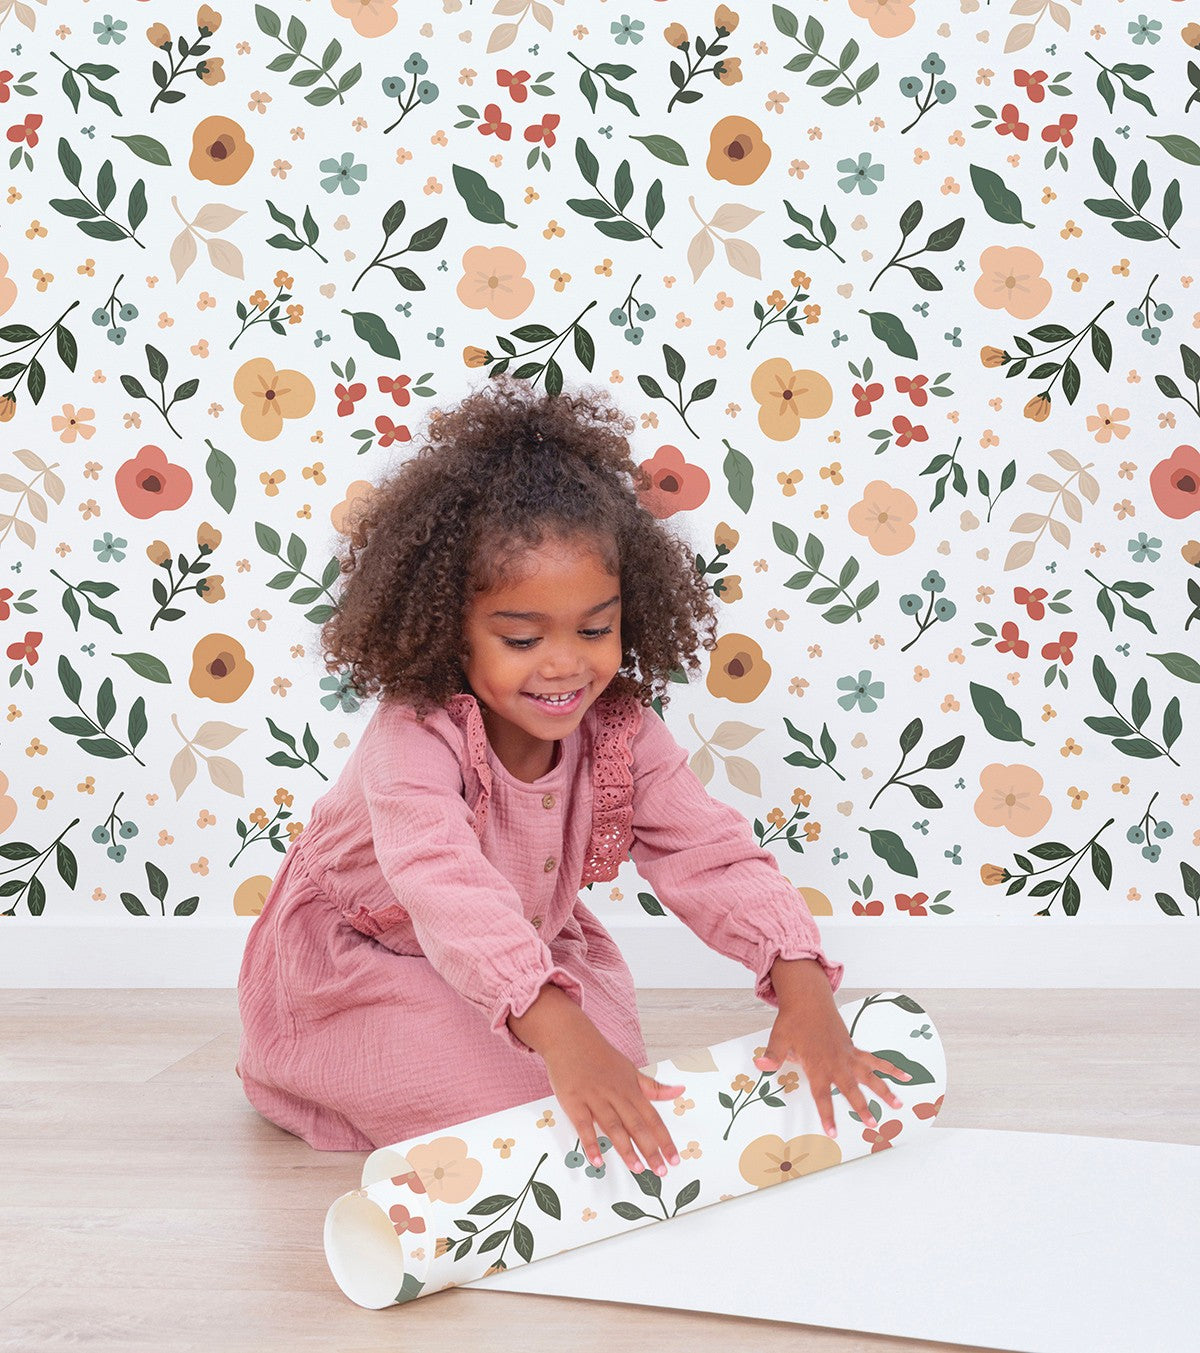 BLOEM - Papier peint enfant - Motif fleurs et feuilles